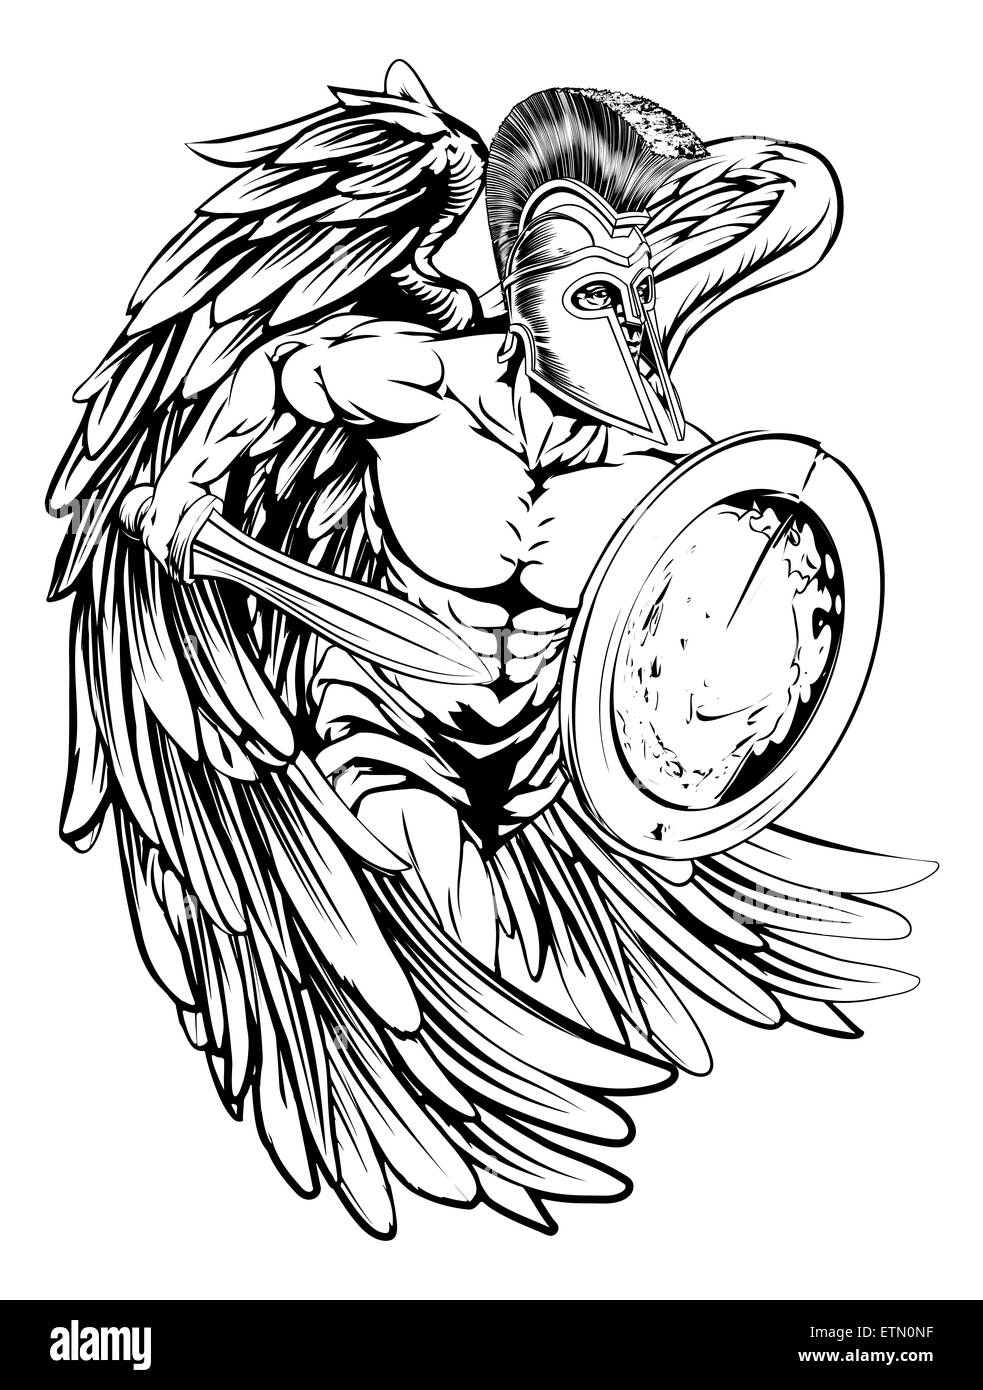 Une illustration d'un ange guerrier ou caractère mascot sport dans un cheval de troie ou casque style spartiate, tenant une épée et un bouclier Banque D'Images